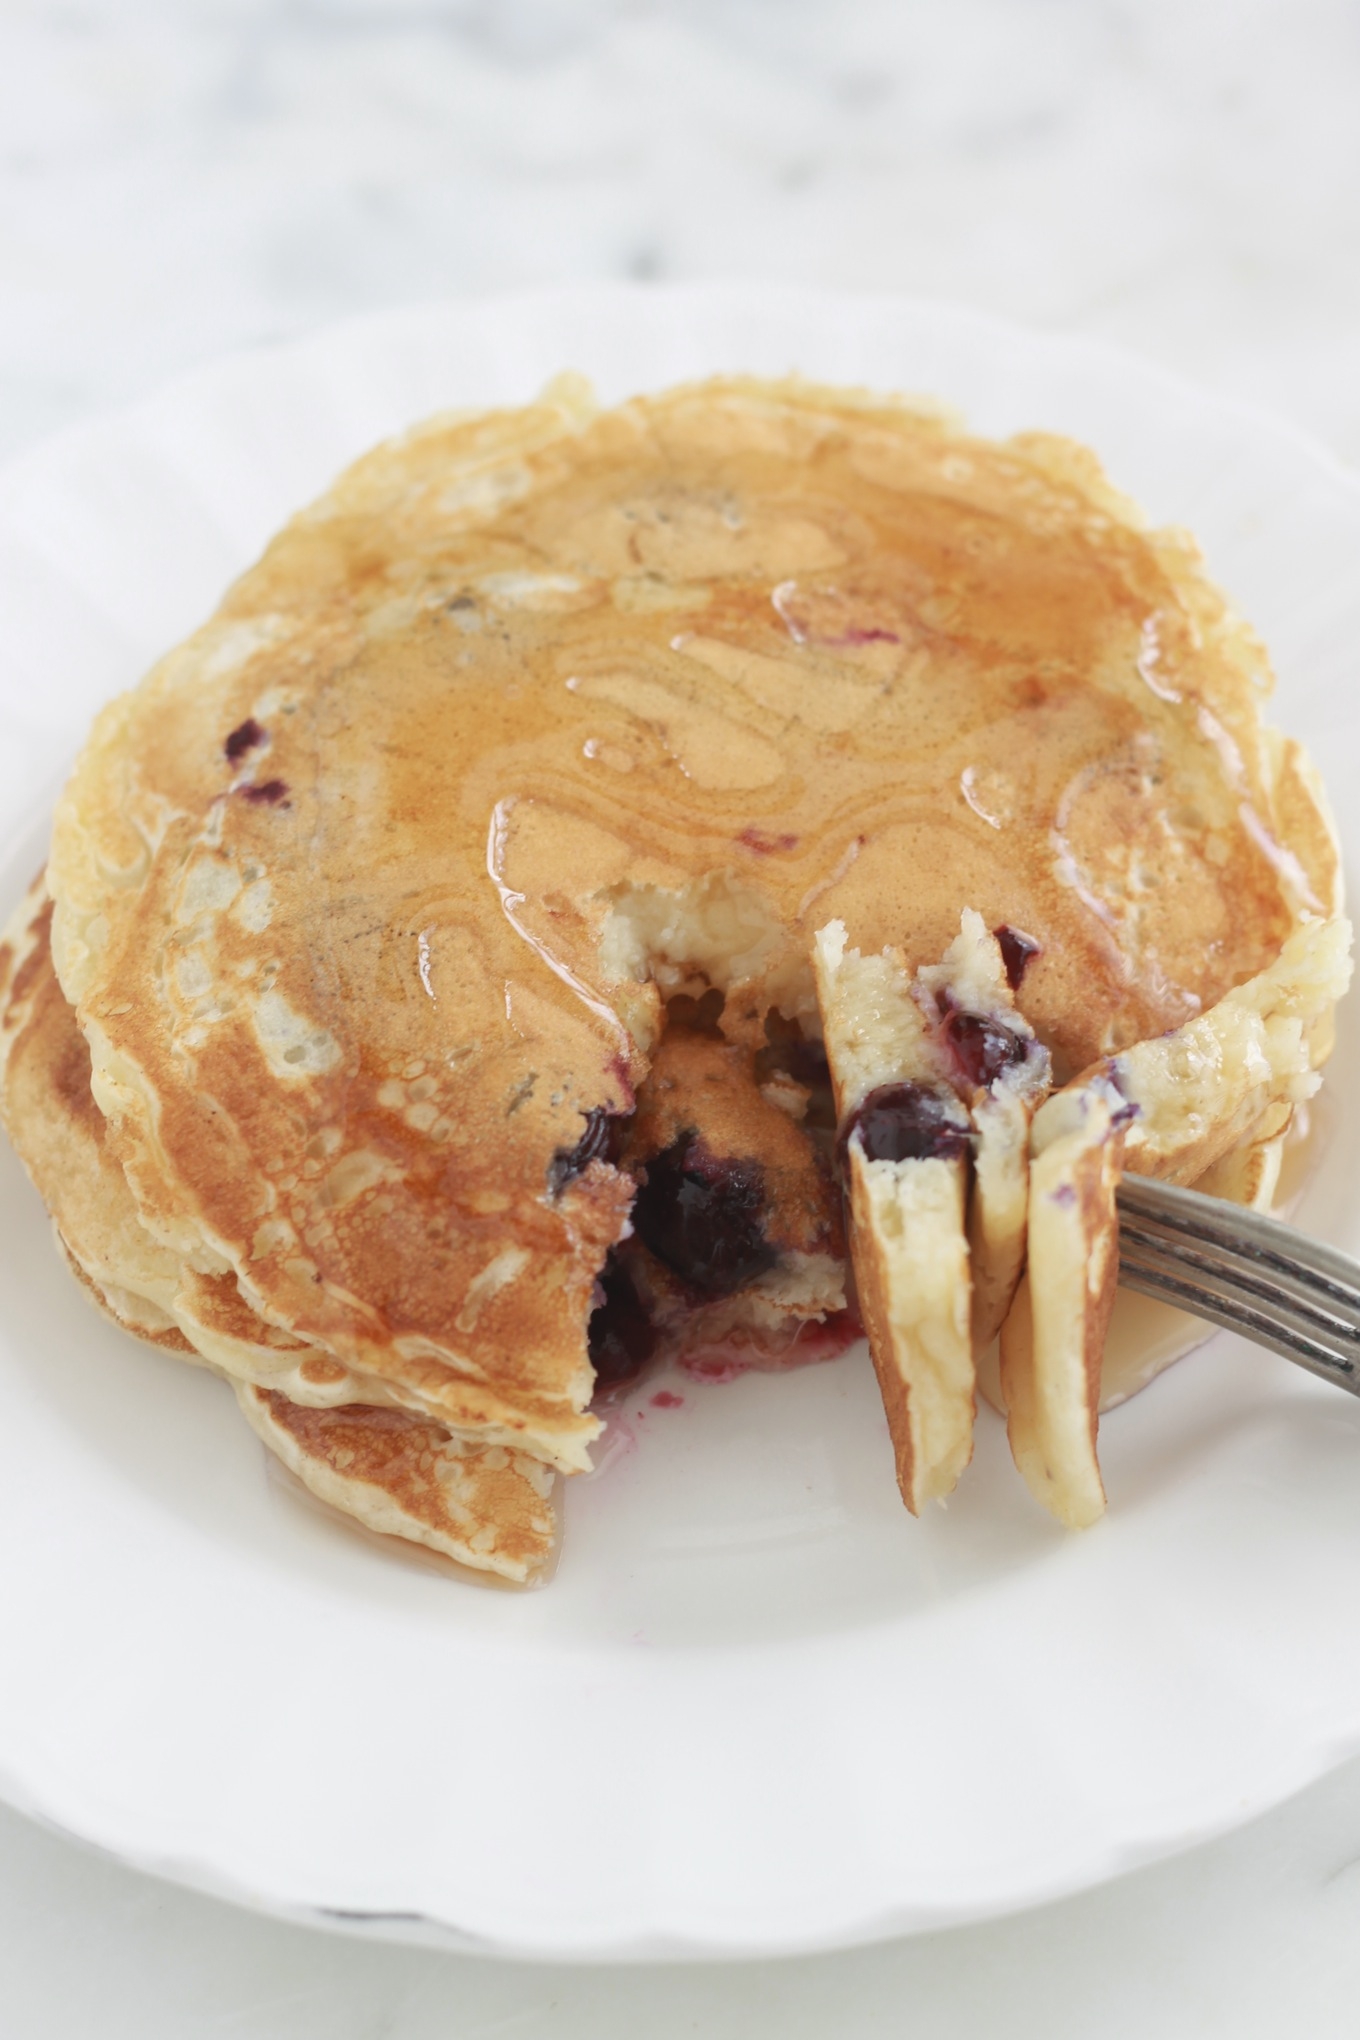 Délicieux pancakes aux myrtilles (bleuets). Très faciles et rapides à faire. Superbes pour le petit déjeuner ou le goûter. Vous pouvez utiliser des myrtilles fraîches ou surgelées./ CuisineCulinaire.com